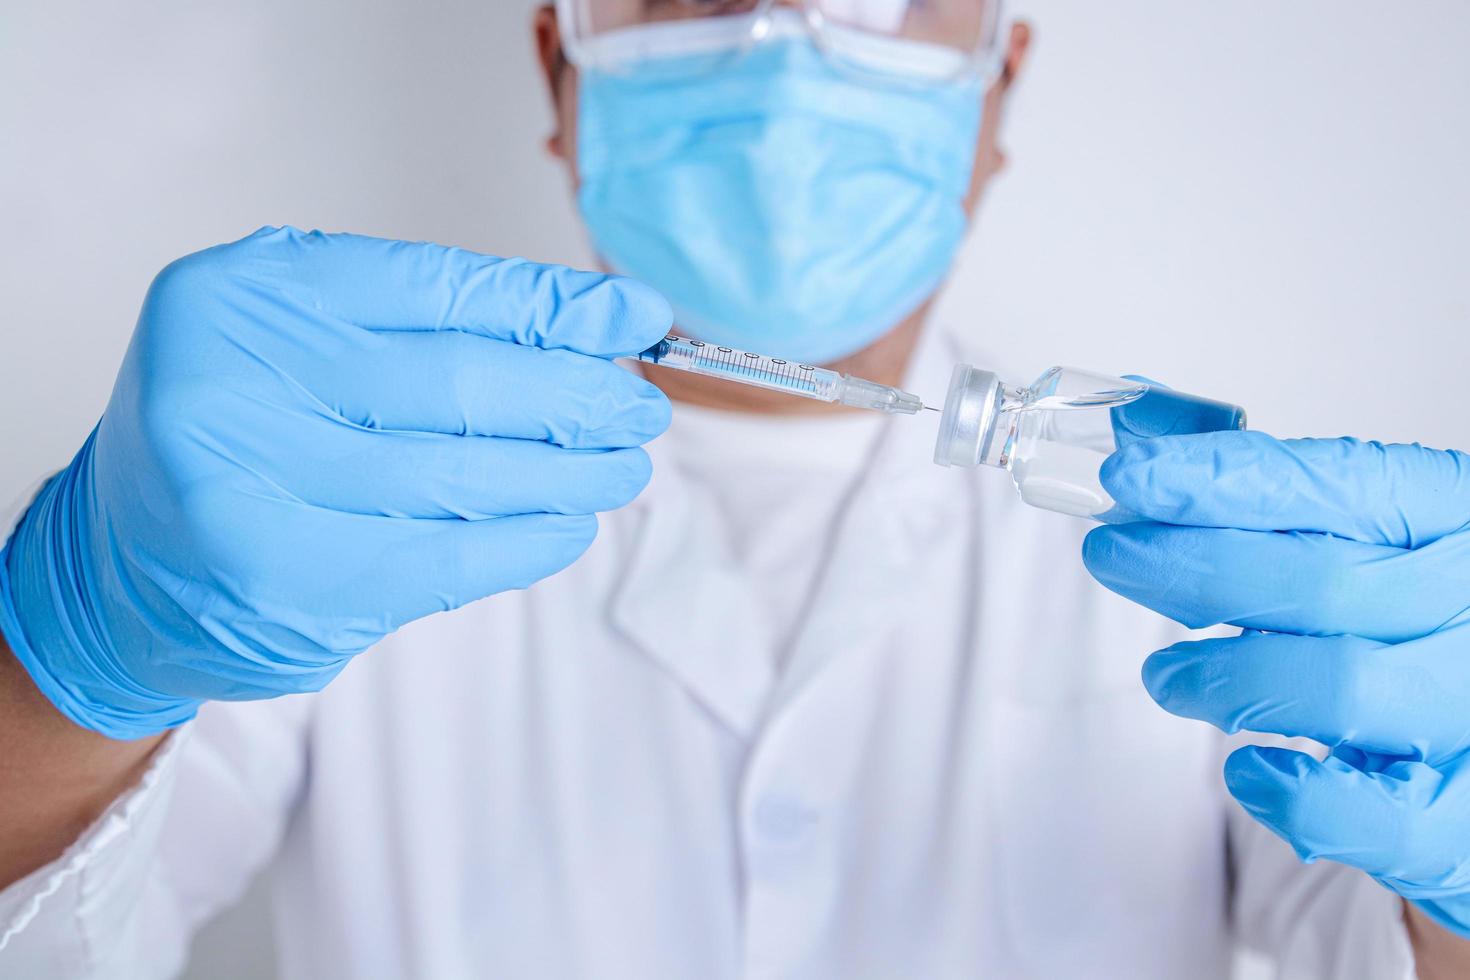 Ärzte oder Wissenschaftler halten Spritzen und Fläschchen mit dem Covid-19-Impfstoff, um Injektionen zur Behandlung von Patienten in Krankenhäusern zu versuchen. Medizinische Experimente verhindern die Ausbreitung des Coronavirus foto